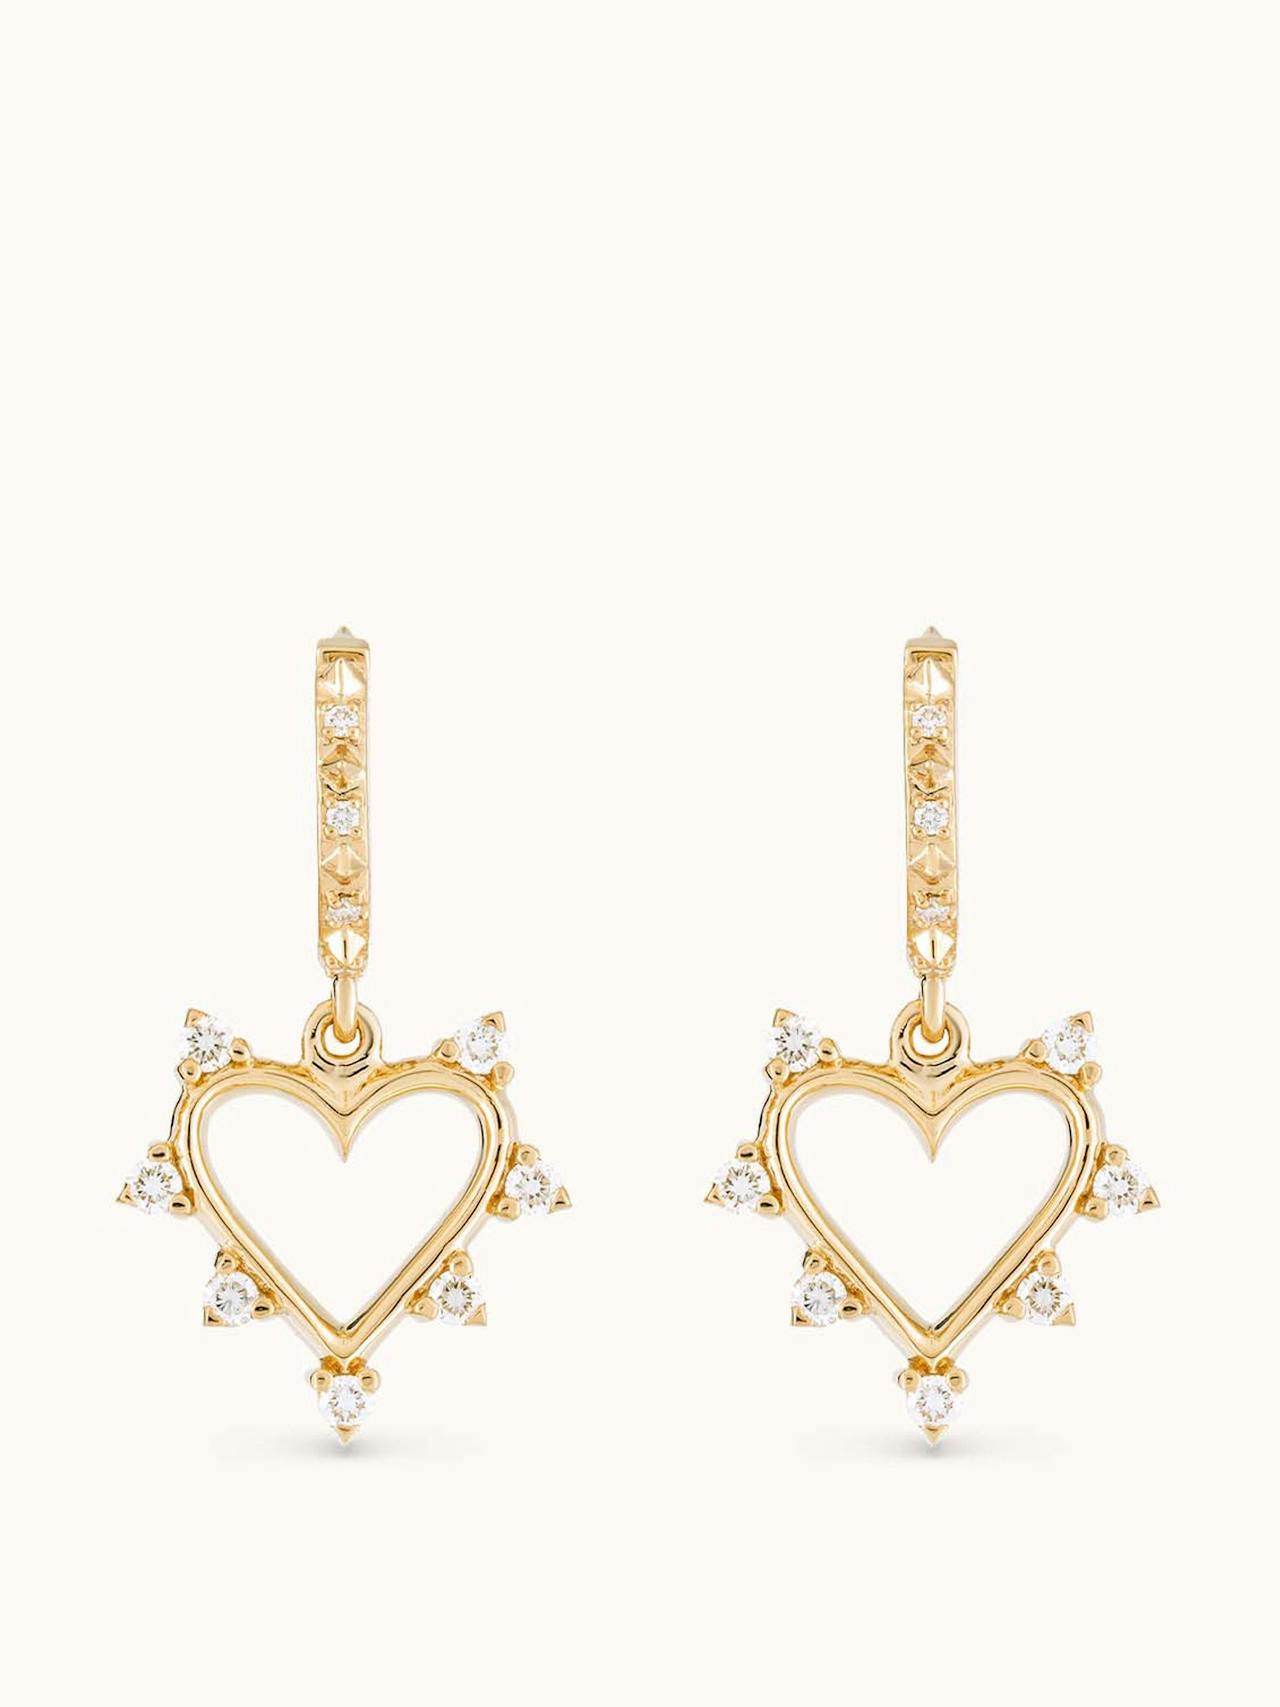 Open heart earrings